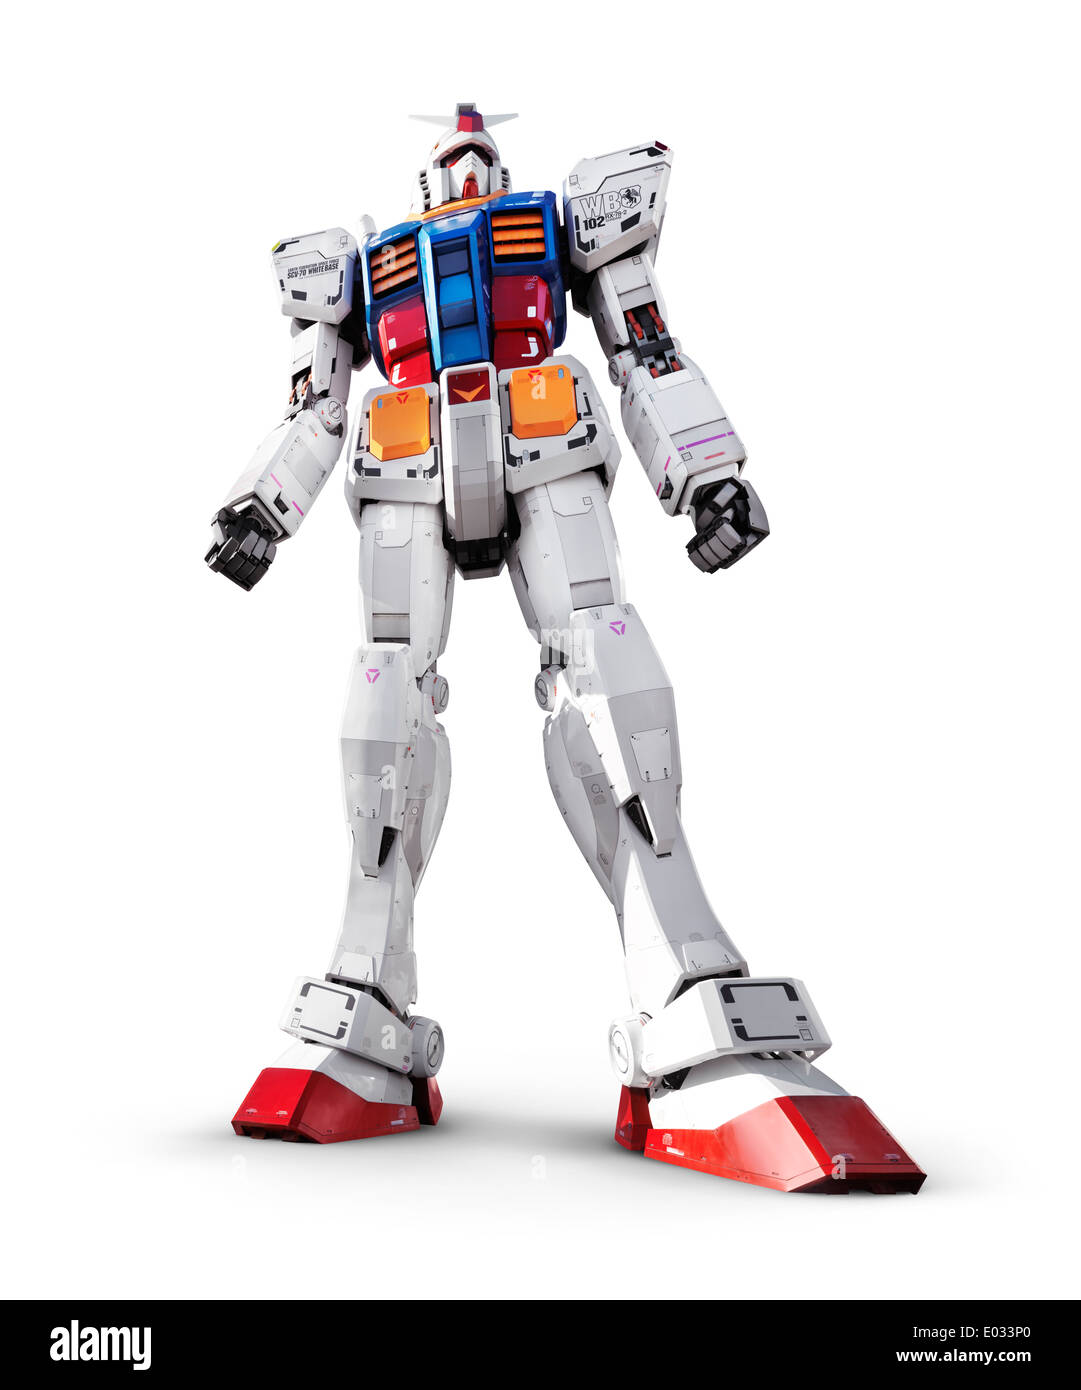 Licenza disponibile su MaximImages.com - Gundam RX-78-2 robot gigante, statua della tuta mobile isolata su sfondo bianco con percorso di ritaglio Foto Stock